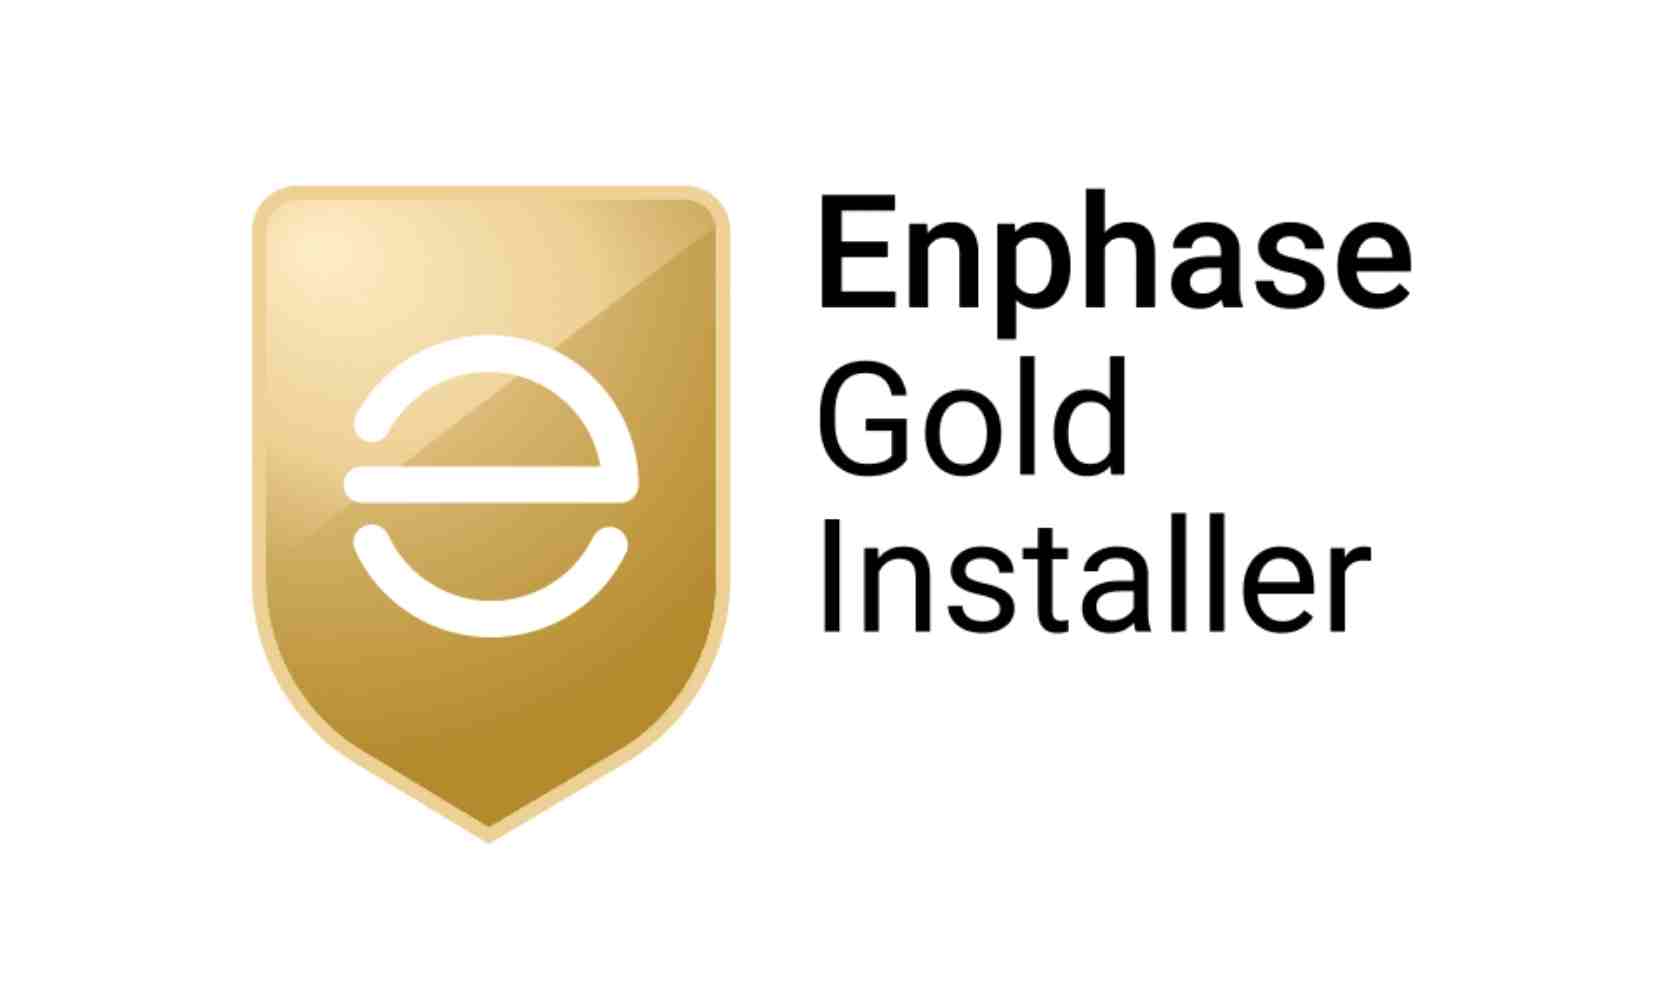 Enphase gold installer